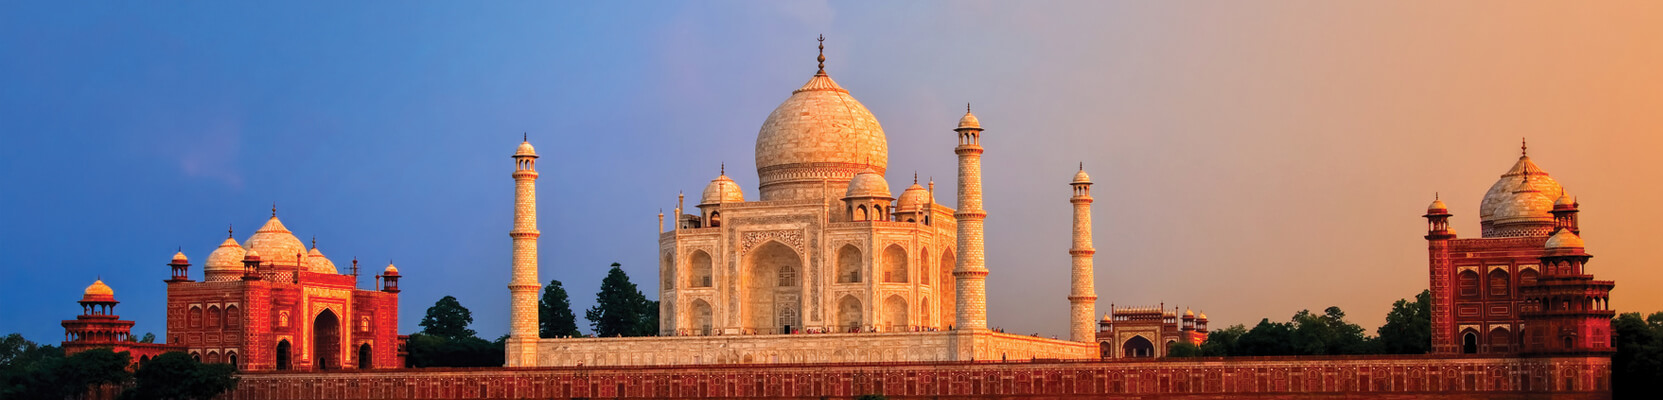 Tiger Trail With Taj Mahal